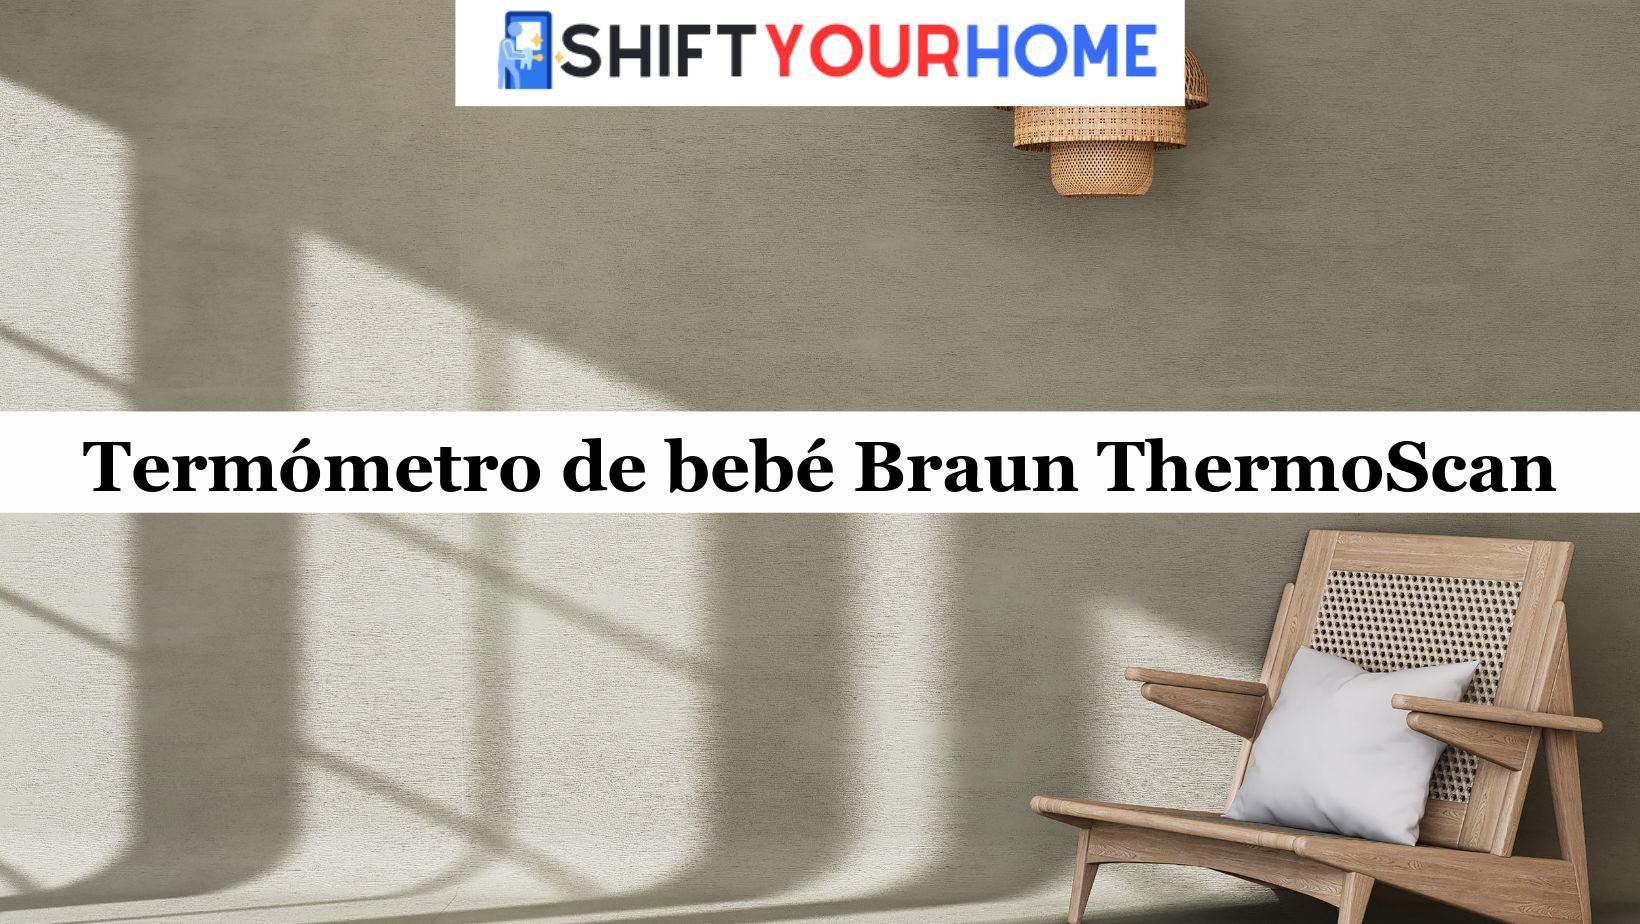 Termómetro de bebé Braun ThermoScan: Análise Completa